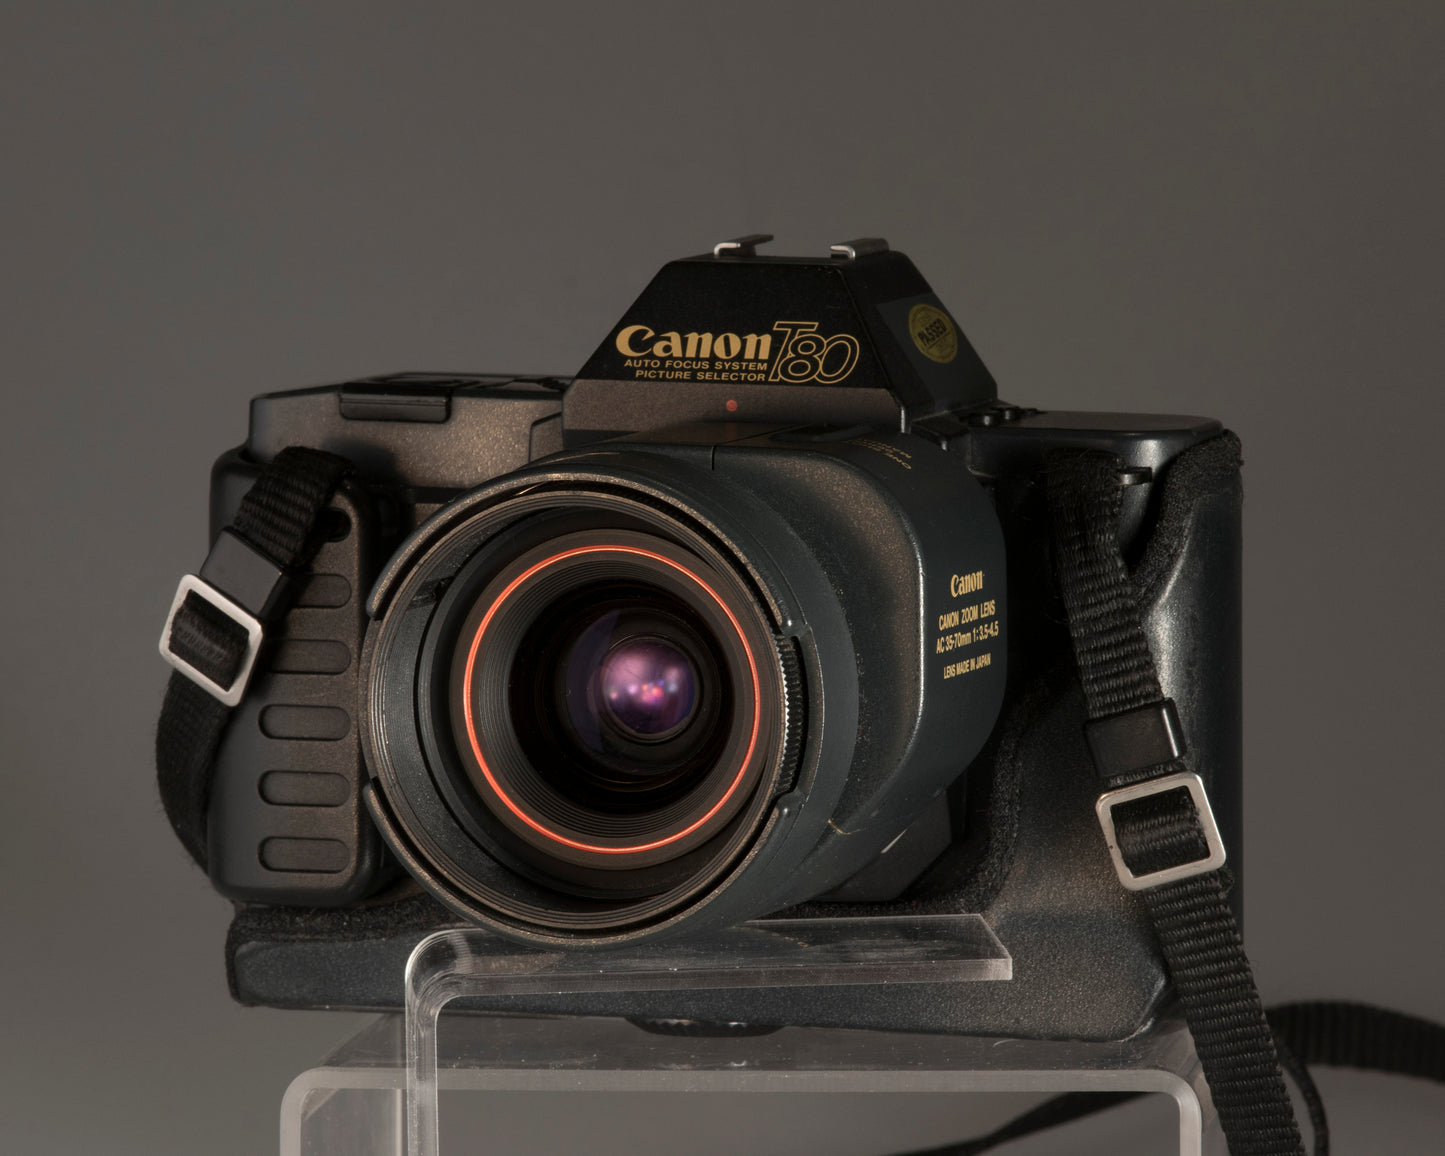 Reflex à pellicule Canon T80 35 mm